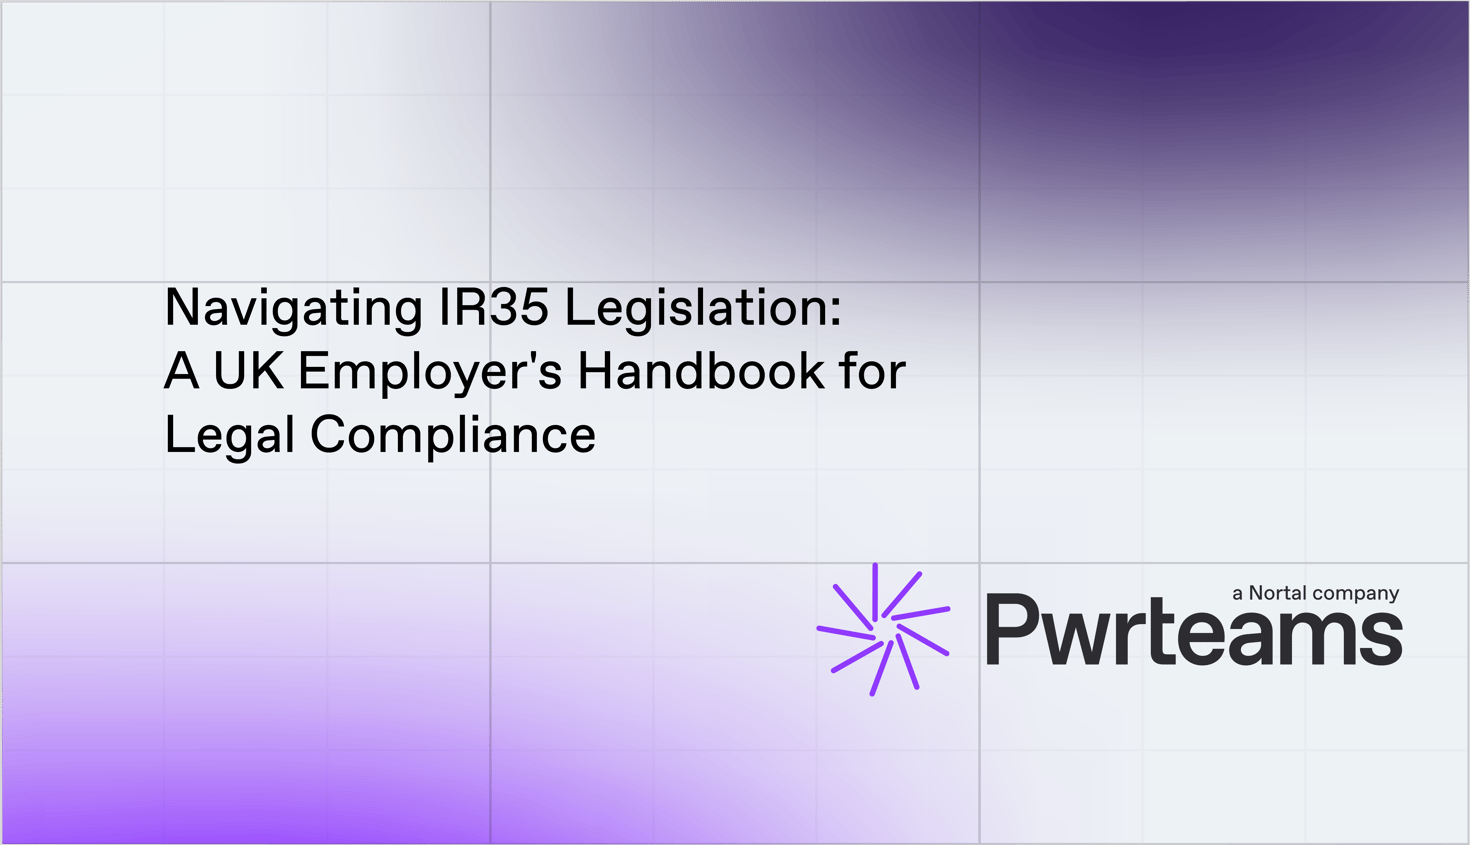 Navigating IR35 Legislation: A UK Employer's Handbook for Legal Compliance